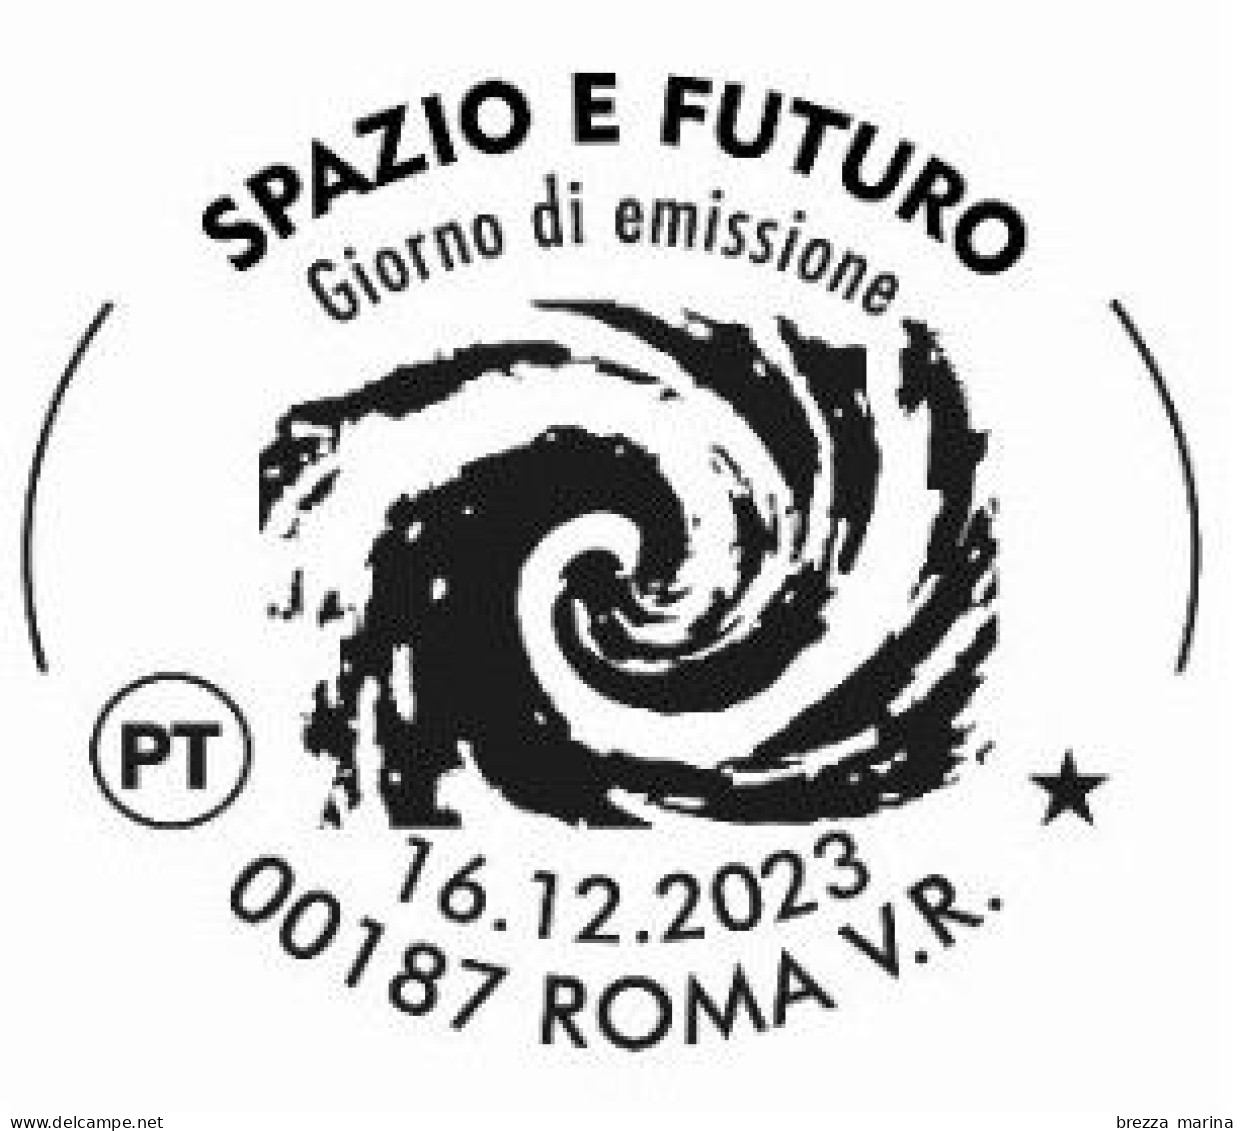 Nuovo - MNH - ITALIA - 2023 - Lo Spazio E Il Futuro - Programmi Spaziali Italiani - B Zona 3 - Barre 2385 - BF - Code-barres